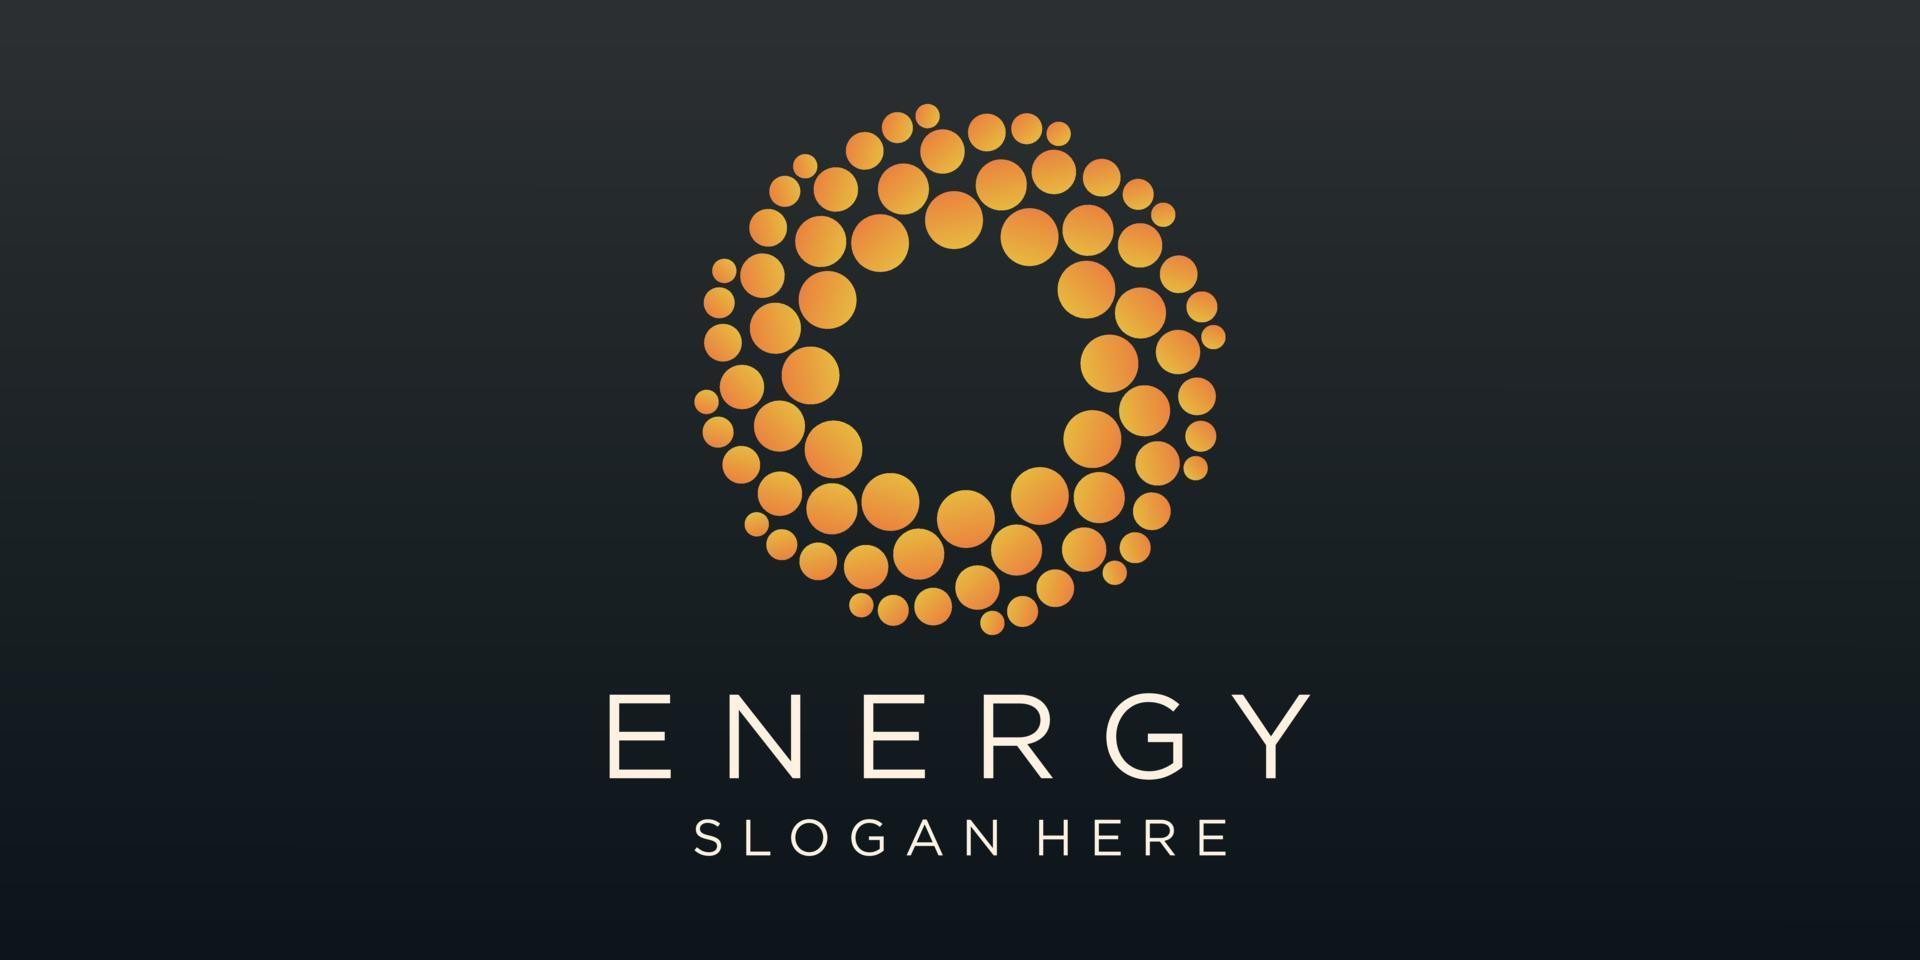 Energy logo designs vector, solar Sun power logo vector